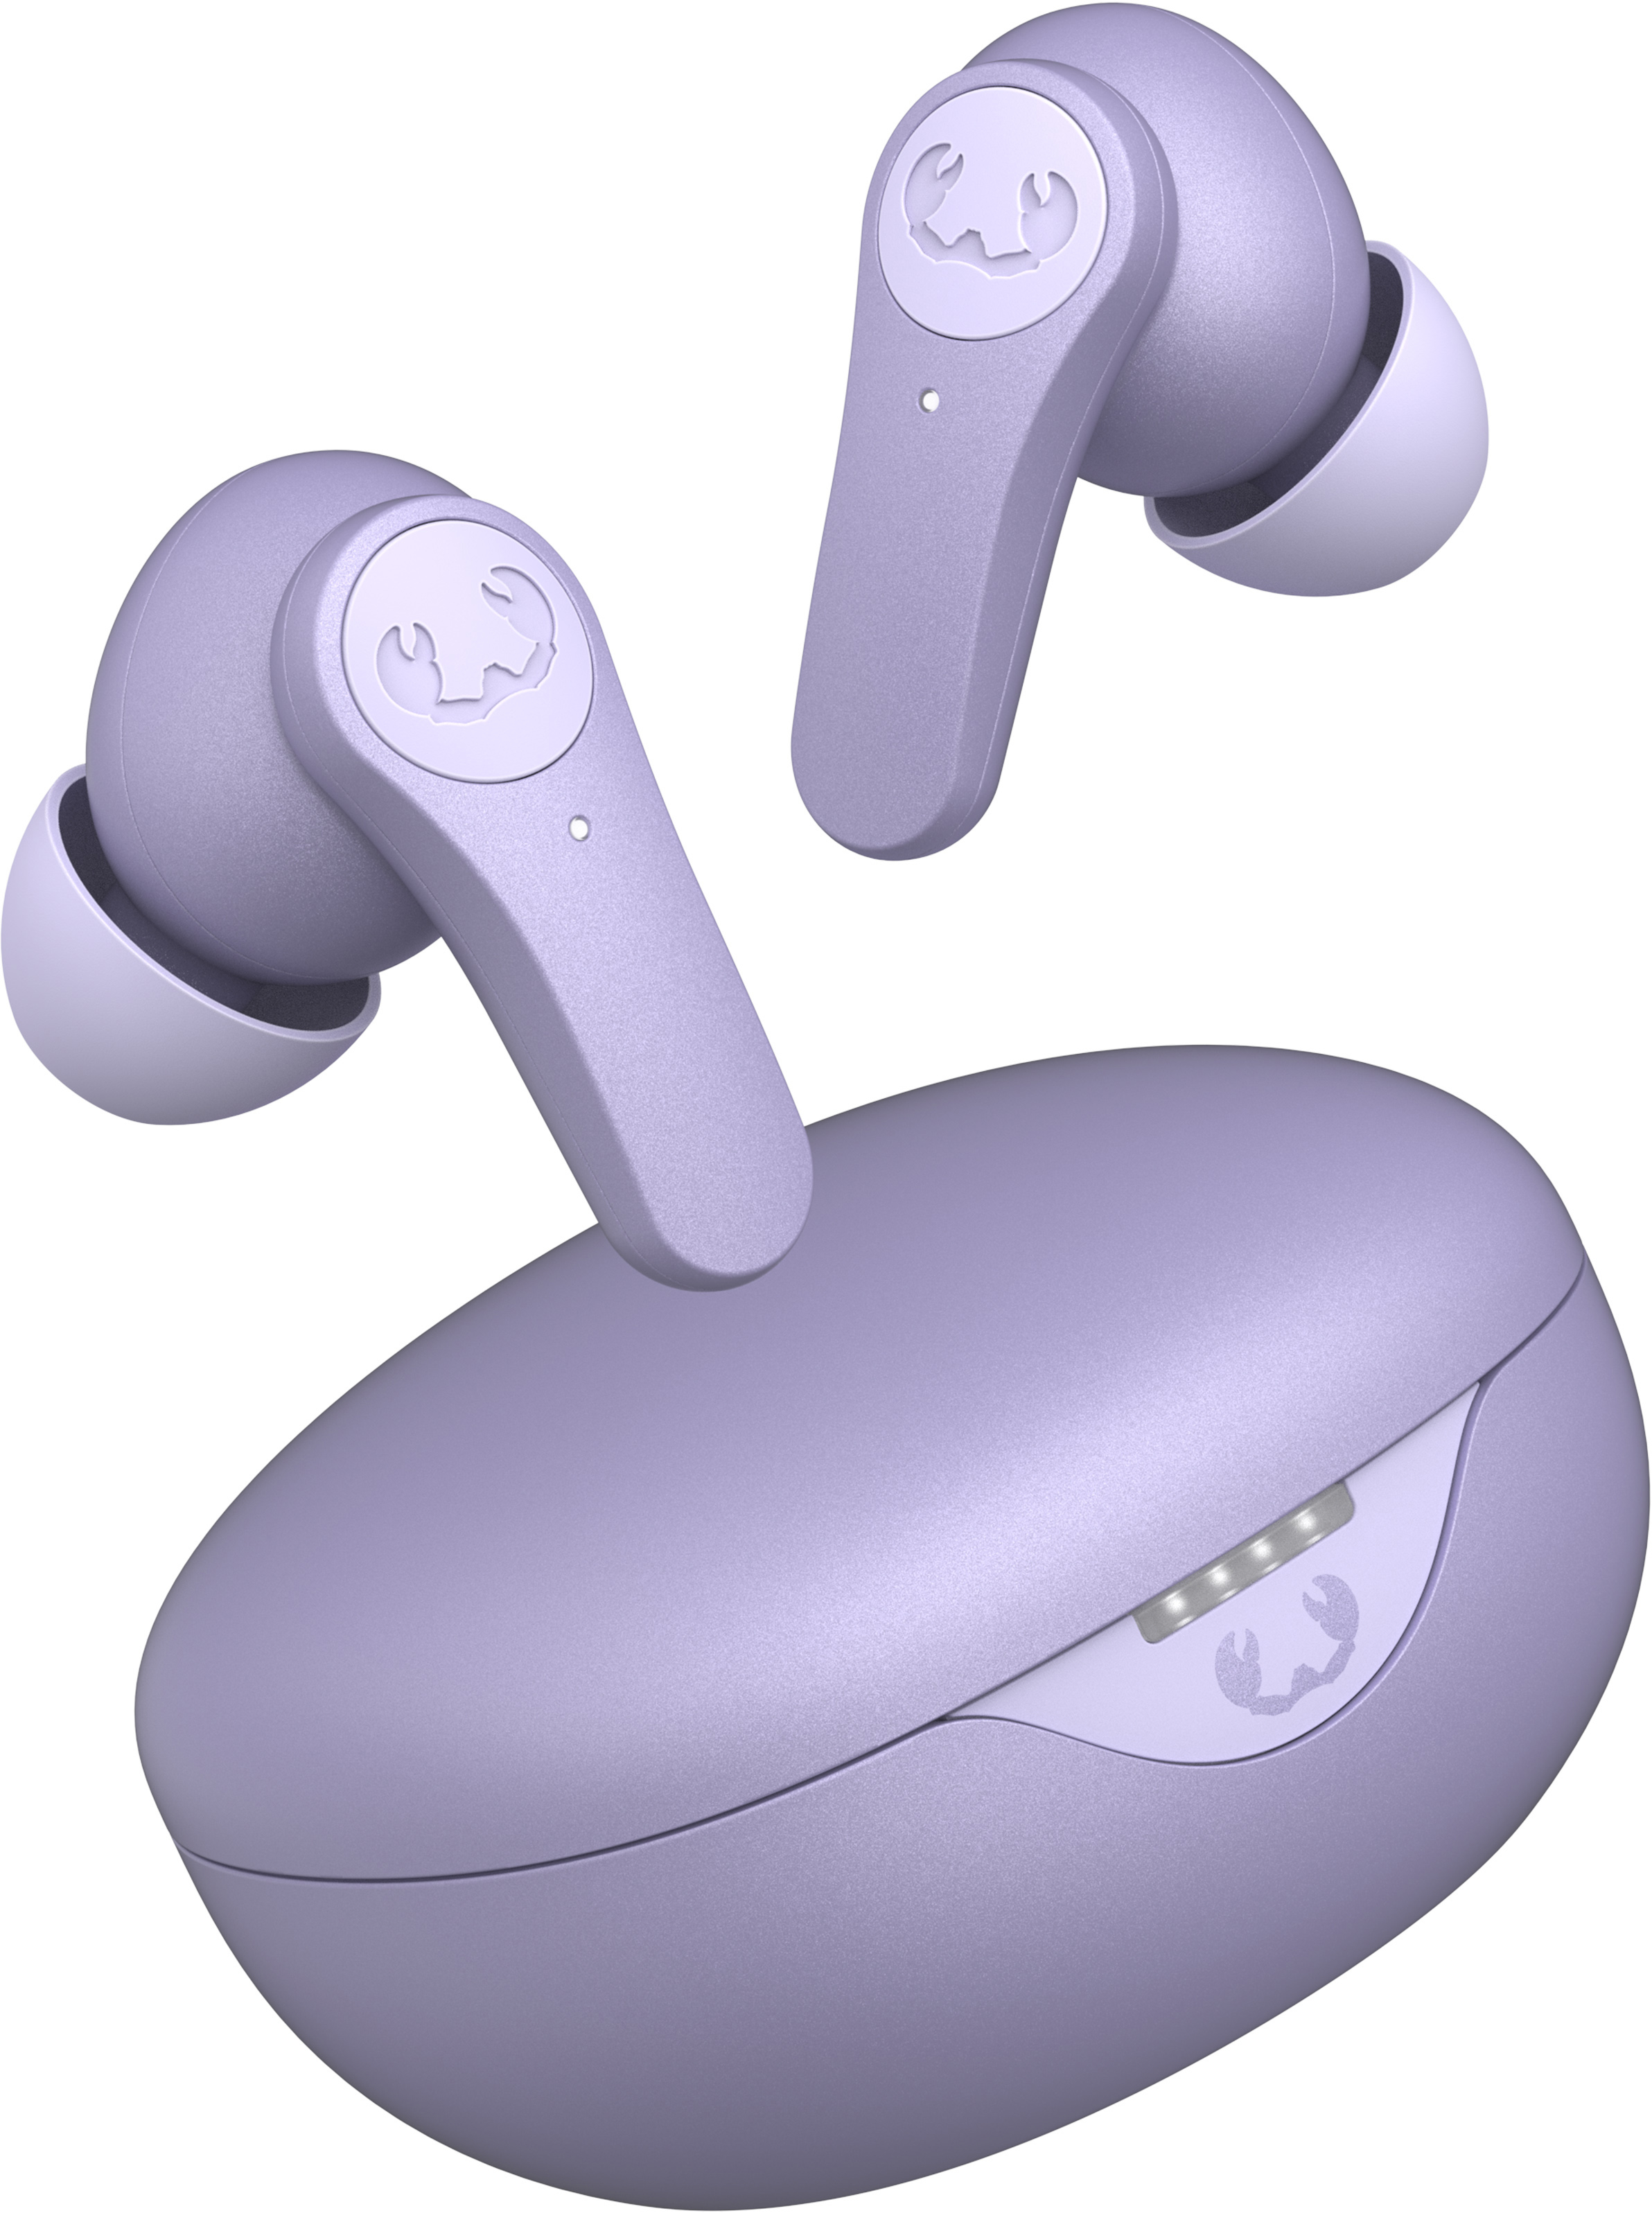 FRESH'N REBEL Twins Rise - TWS earbuds 3TW3500DL Dreamy Lilac Hybrid ANC